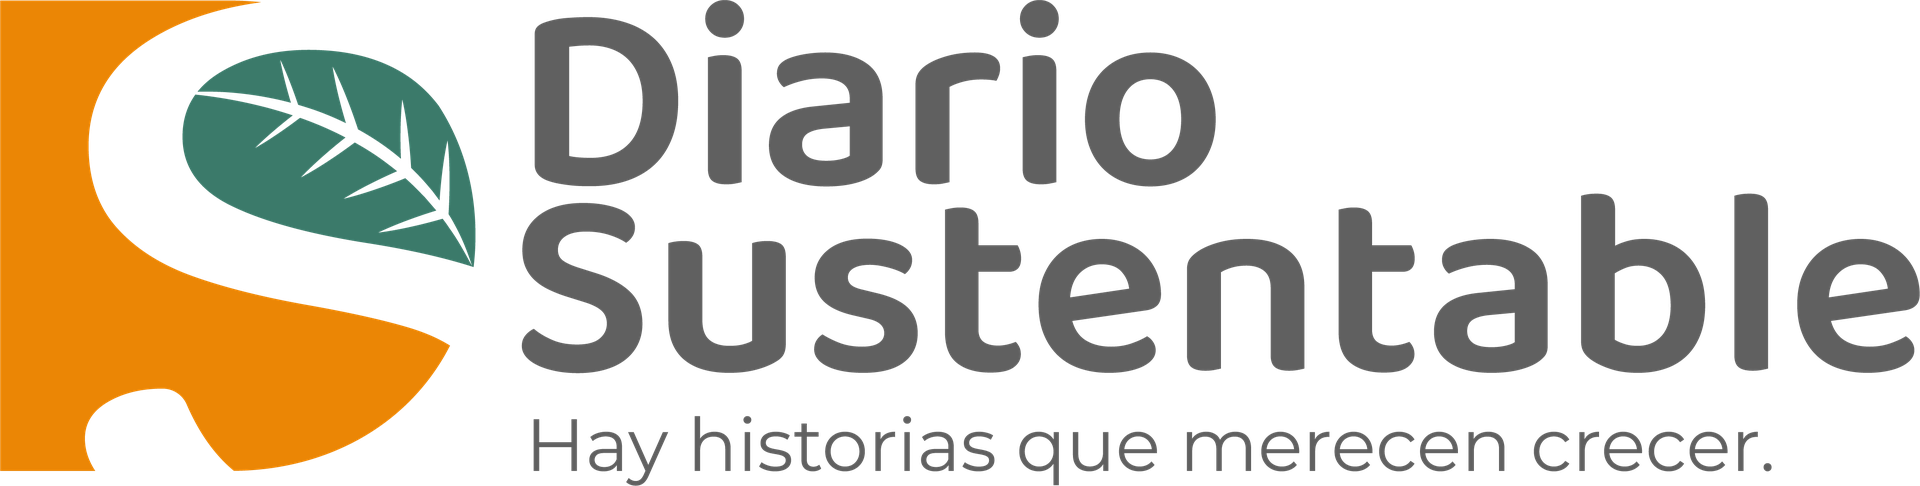 https://www.diariosustentable.com/